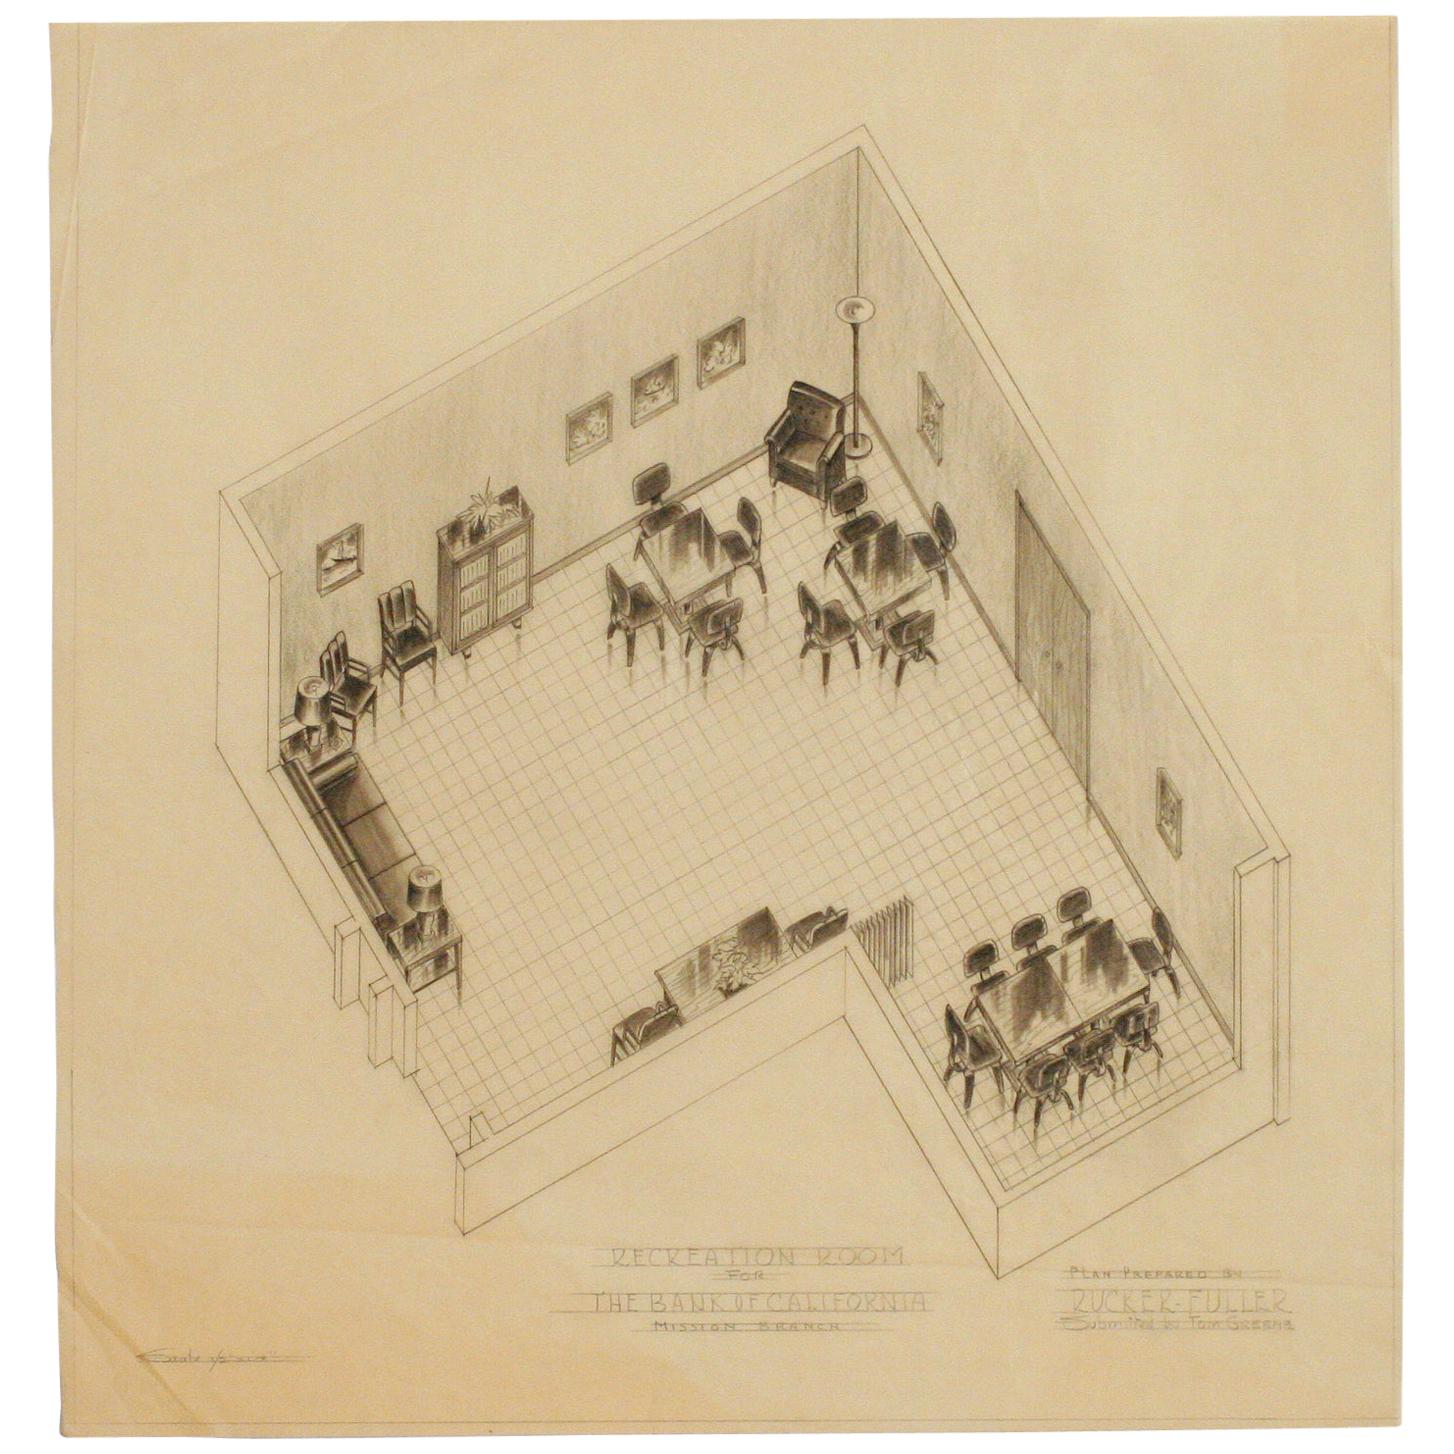 Architektonische Rendering für das Recreation Room von Rucker Fuller, 1955